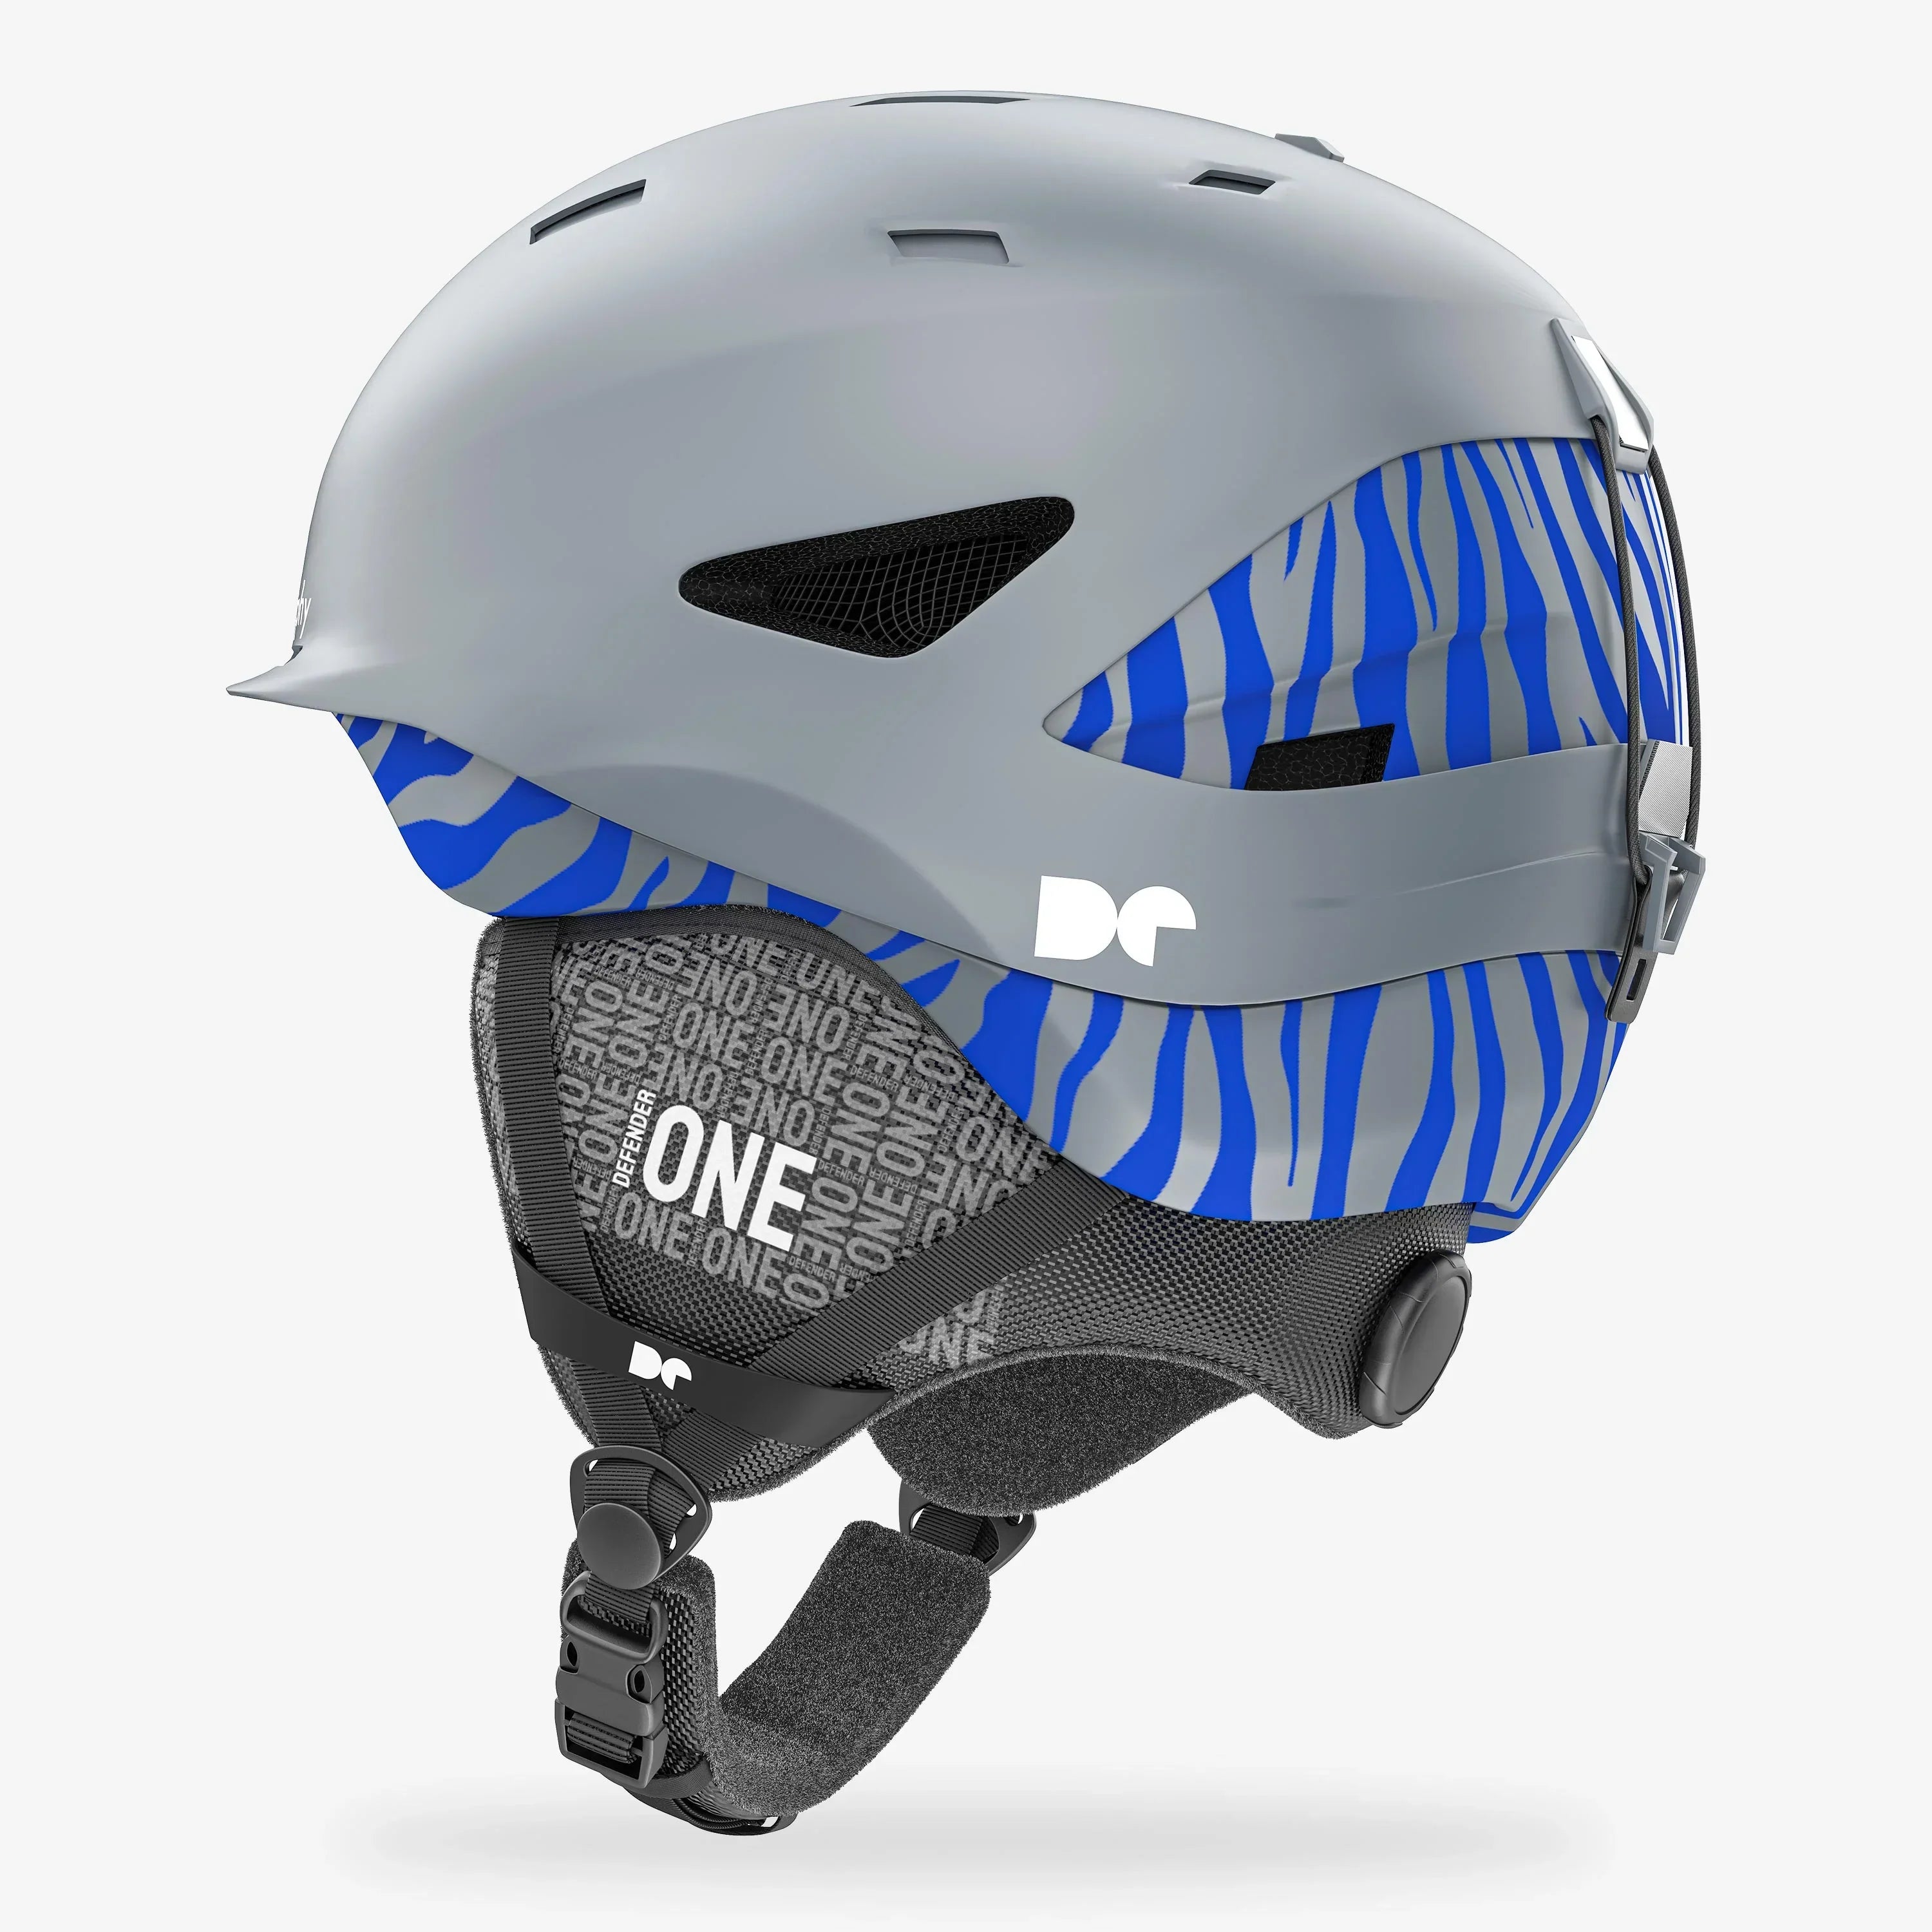 Defender One Space Gray Ski Helmet